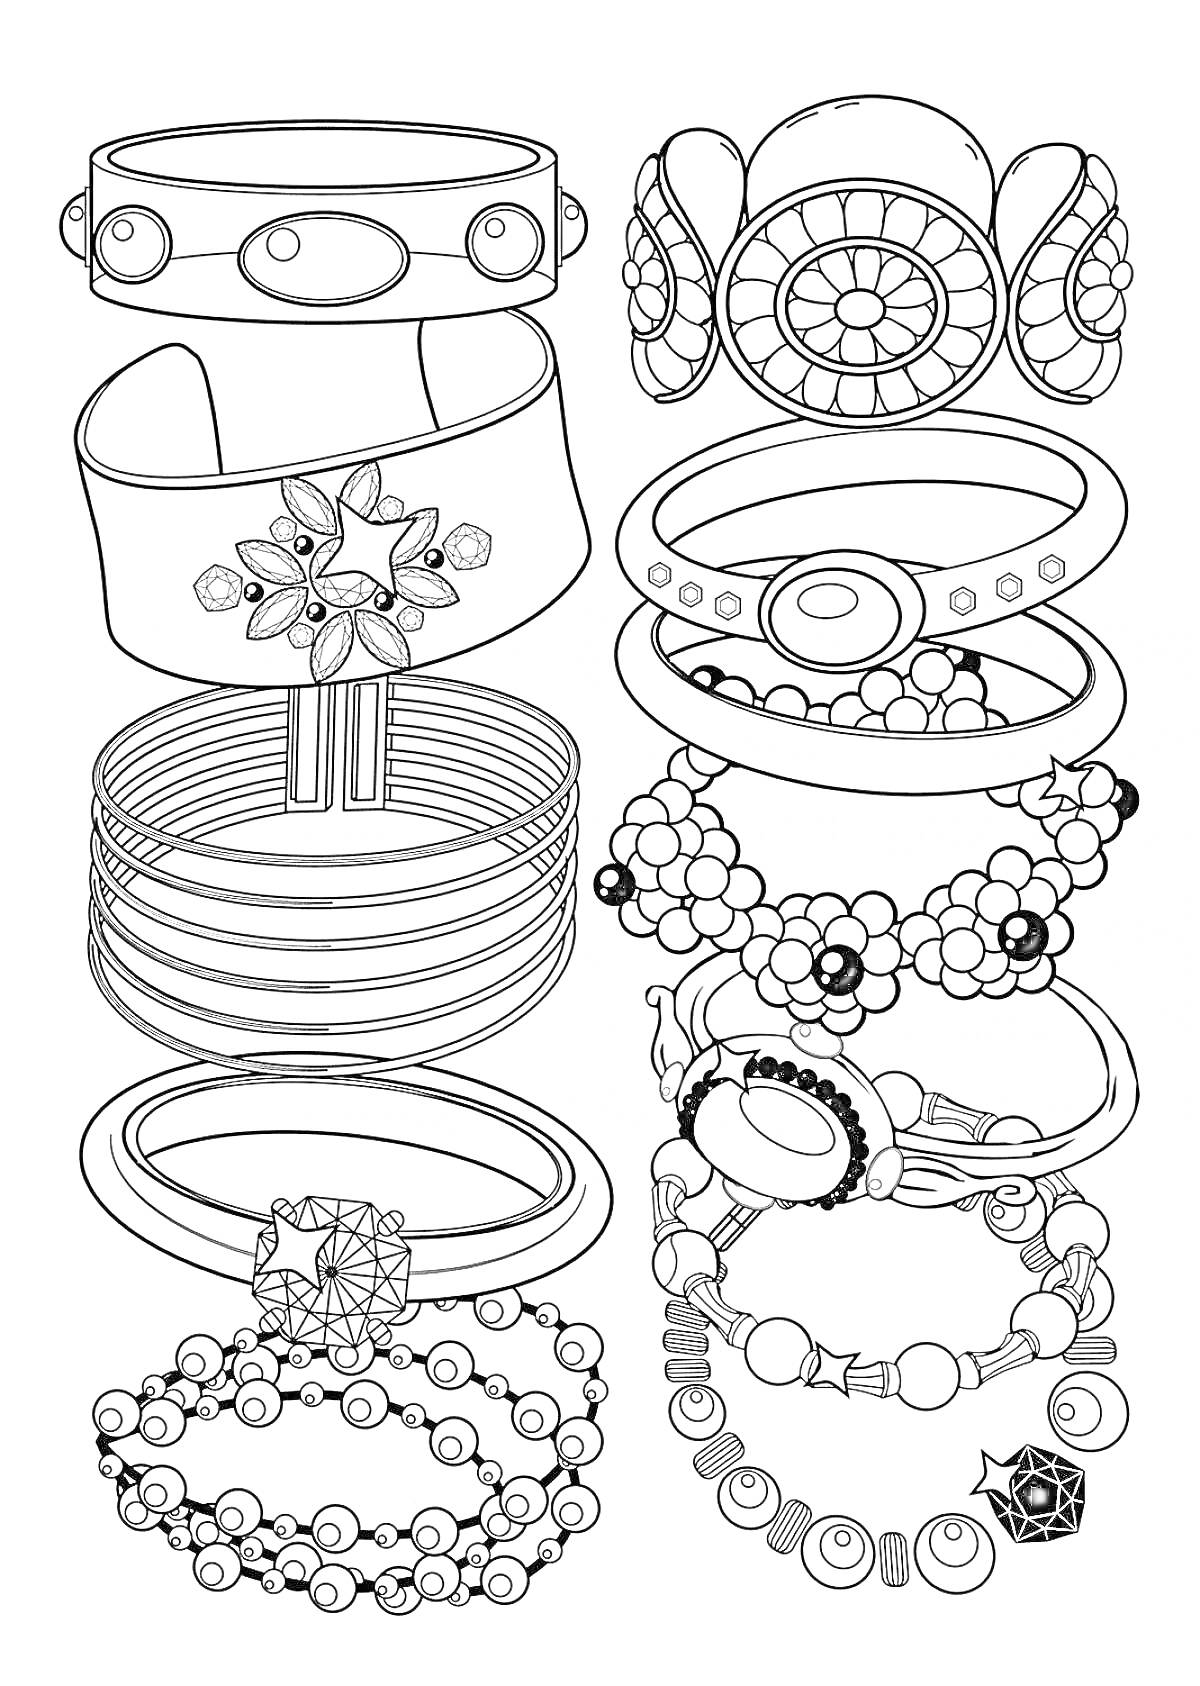 РаскраскаБраслеты и кольца с орнаментами, цветами, вставками и бусинами